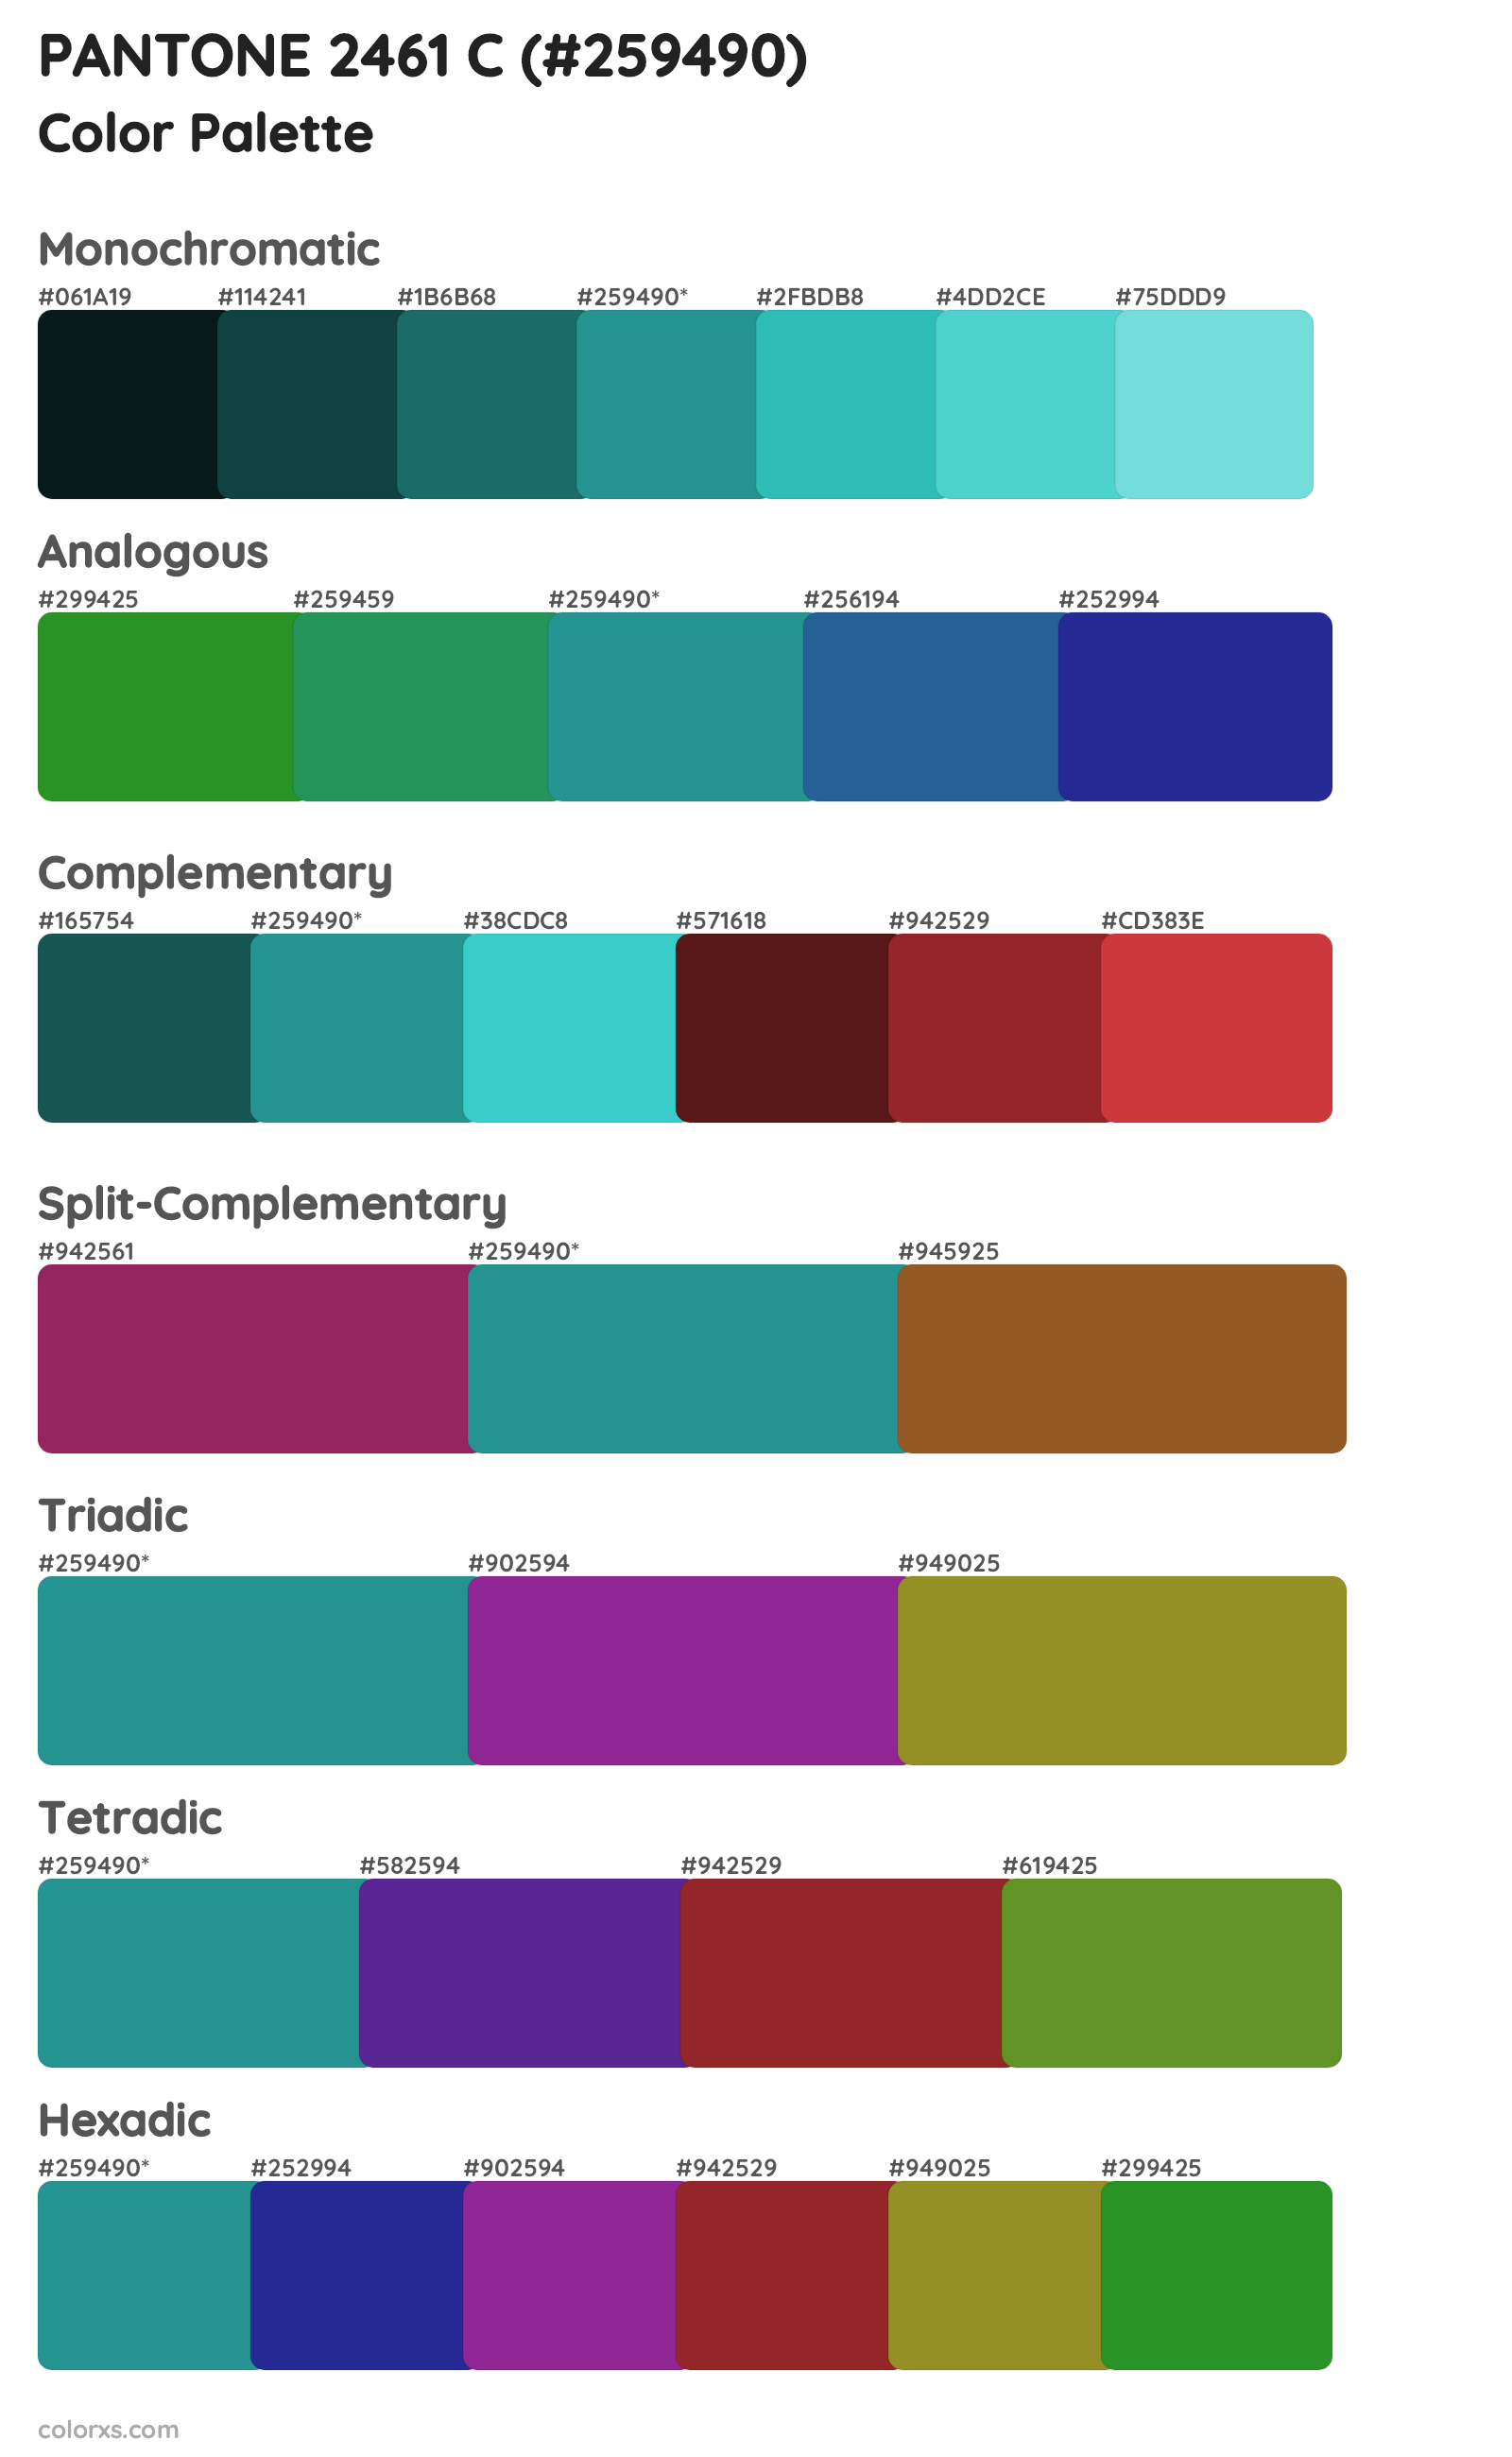 PANTONE 2461 C Color Scheme Palettes